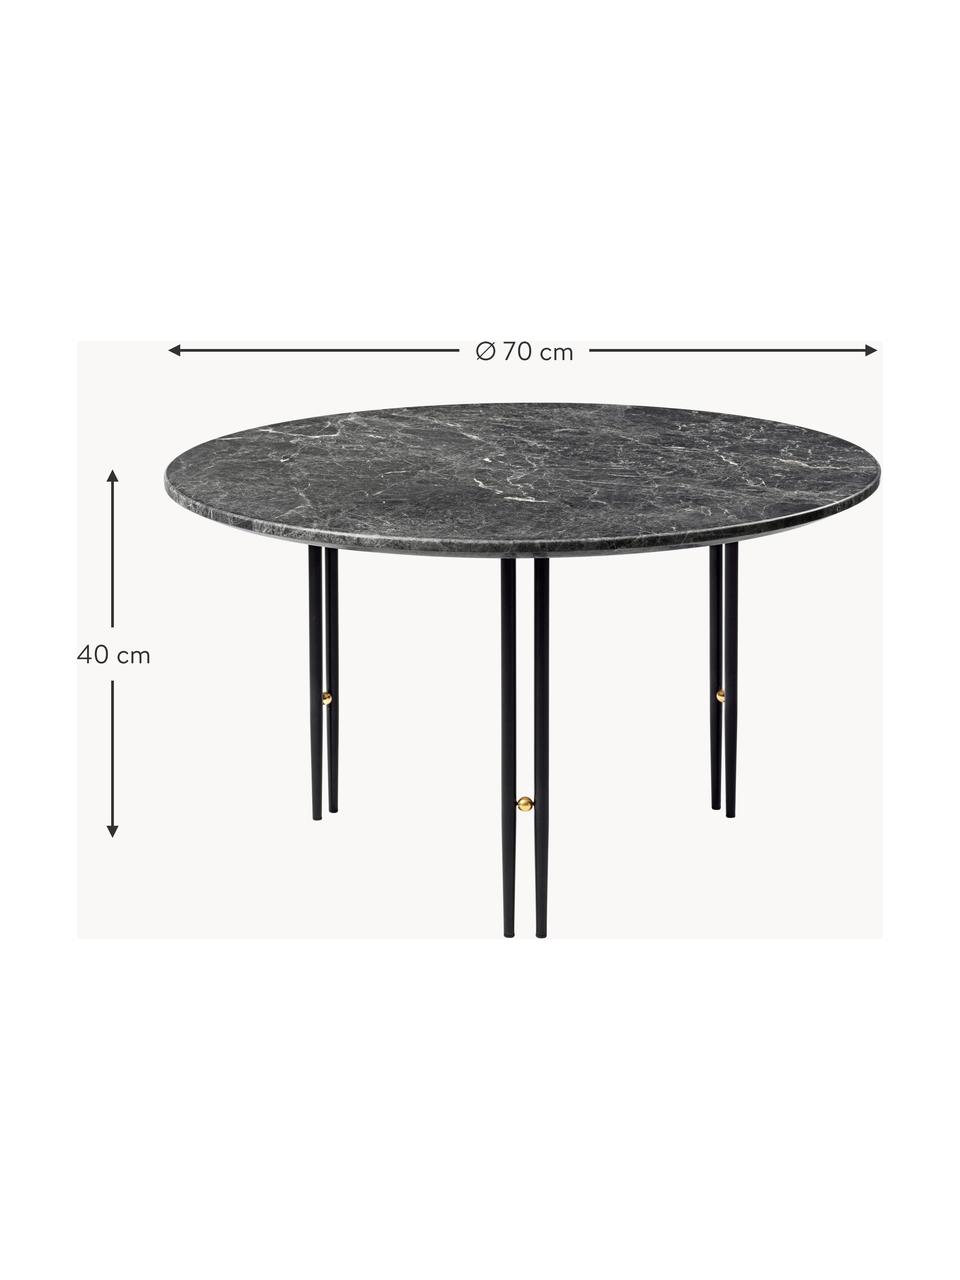 Runder Marmor-Couchtisch IOI, Ø 70 cm, Tischplatte: Marmor, Gestell: Stahl, lackiert, Dekor: Messing, Dunkelgrau marmoriert, Schwarz, Ø 70 cm